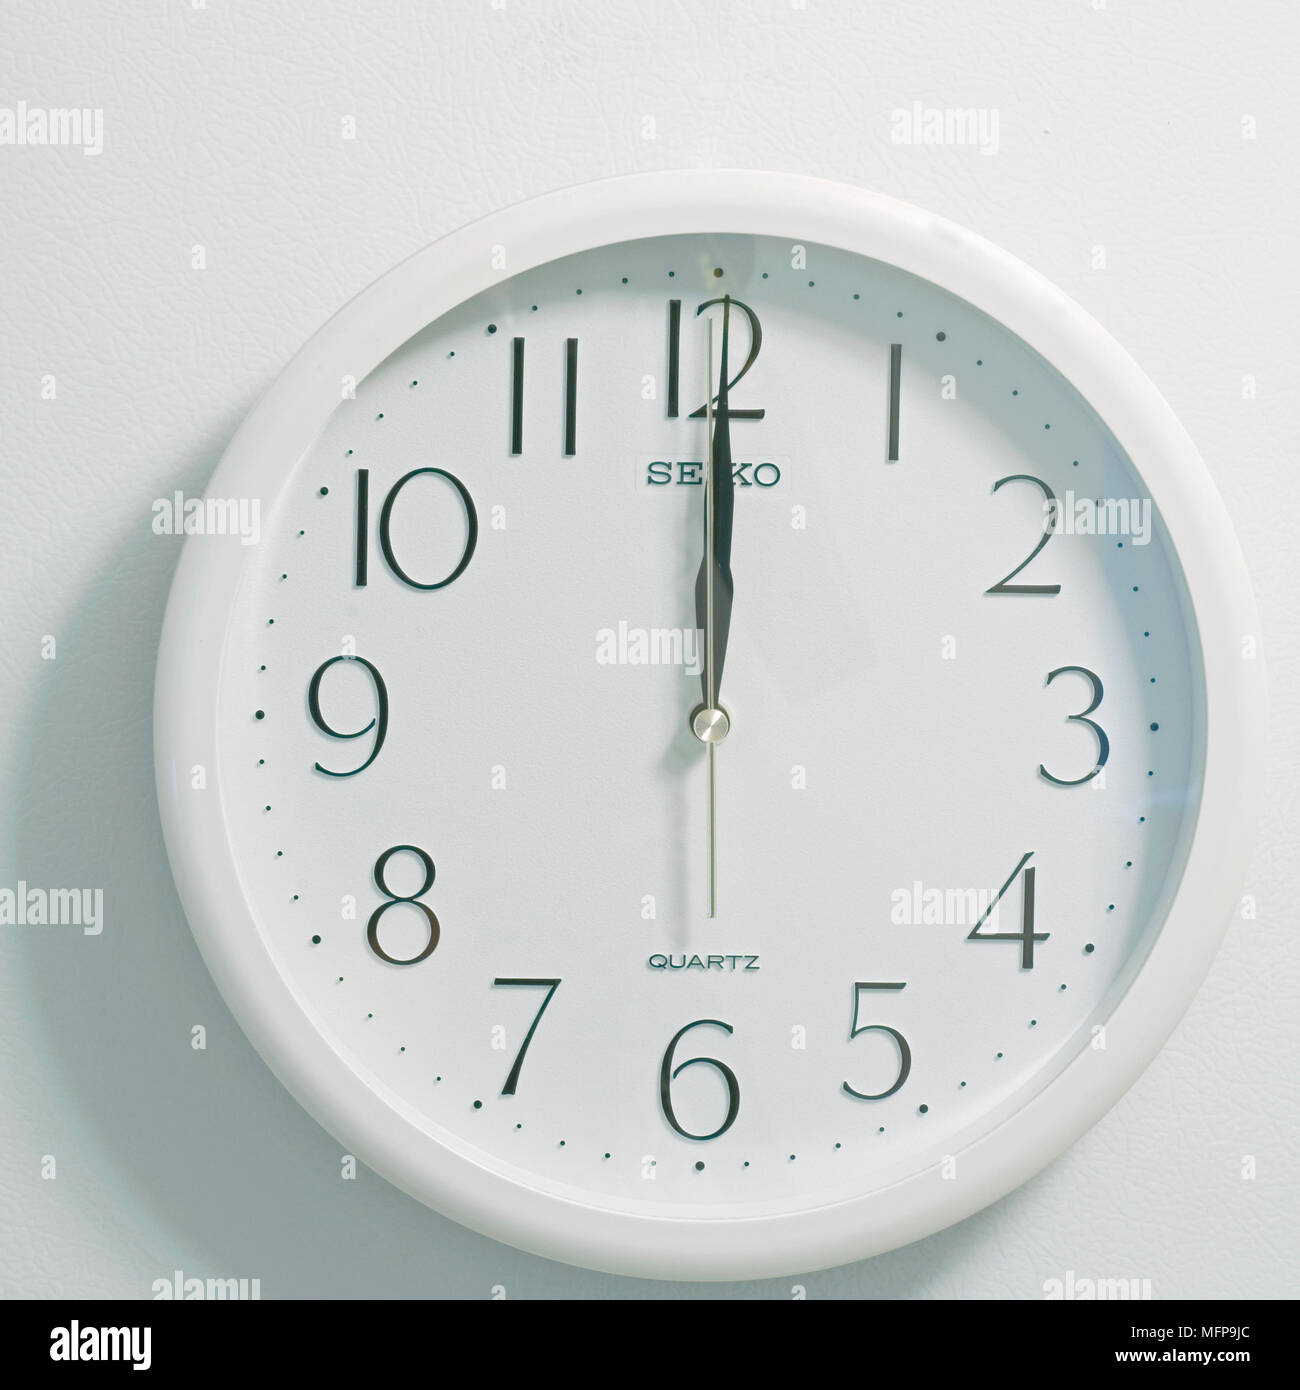 Primo piano della faccia del moderno stile orologio mostra bianco rotondo e quadrante nero al momento dodici ore di mezzogiorno o mezzanotte su sfondo bianco Foto Stock